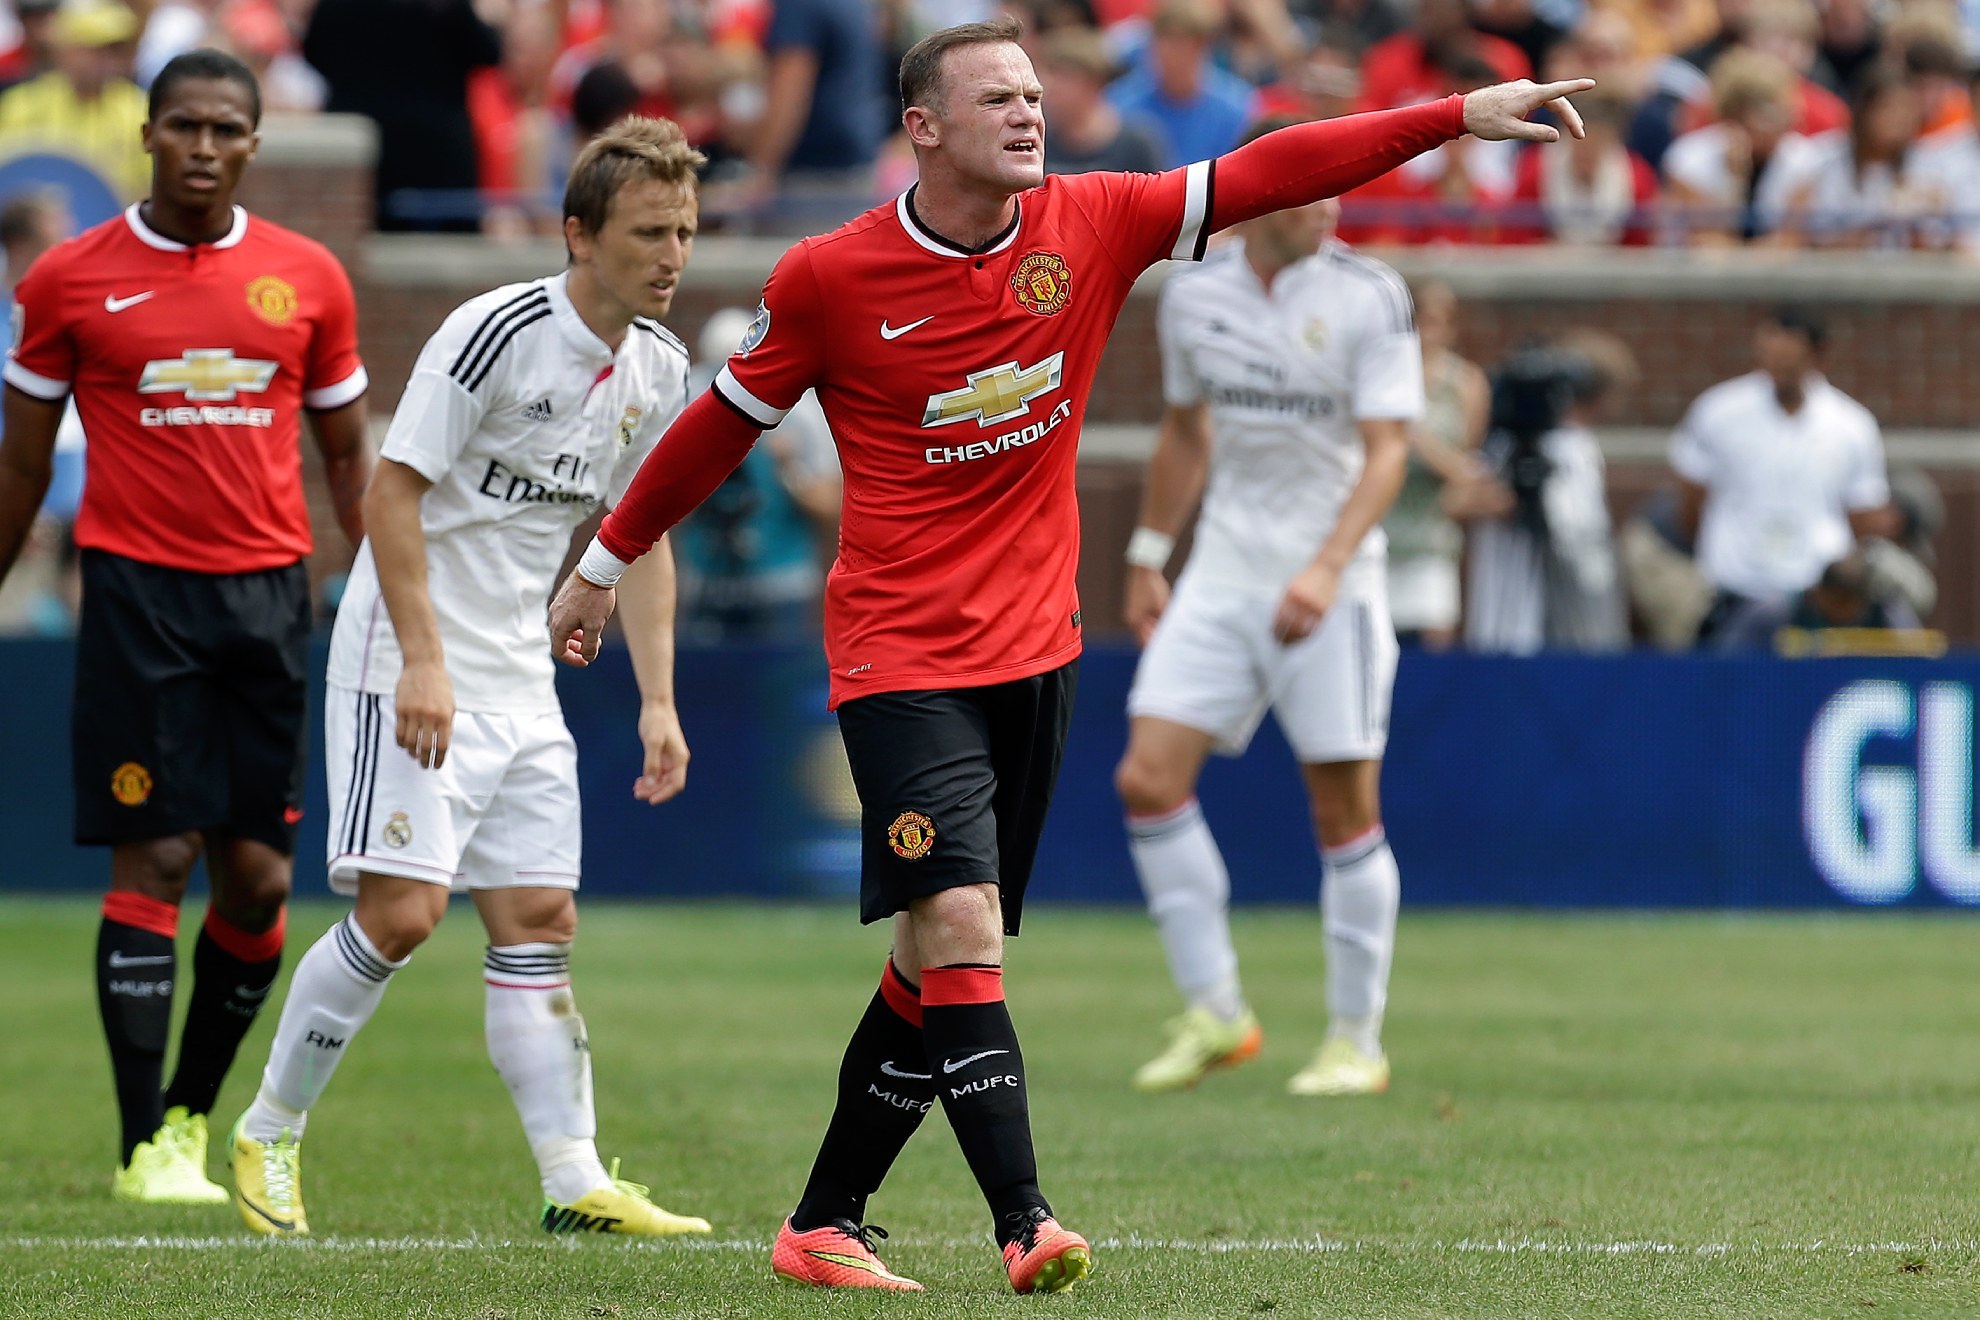 Rooney enfrent al Real Madrid varias veces en su carrera. Aqu lo hace en un amistoso en Estados Unidos en 2014